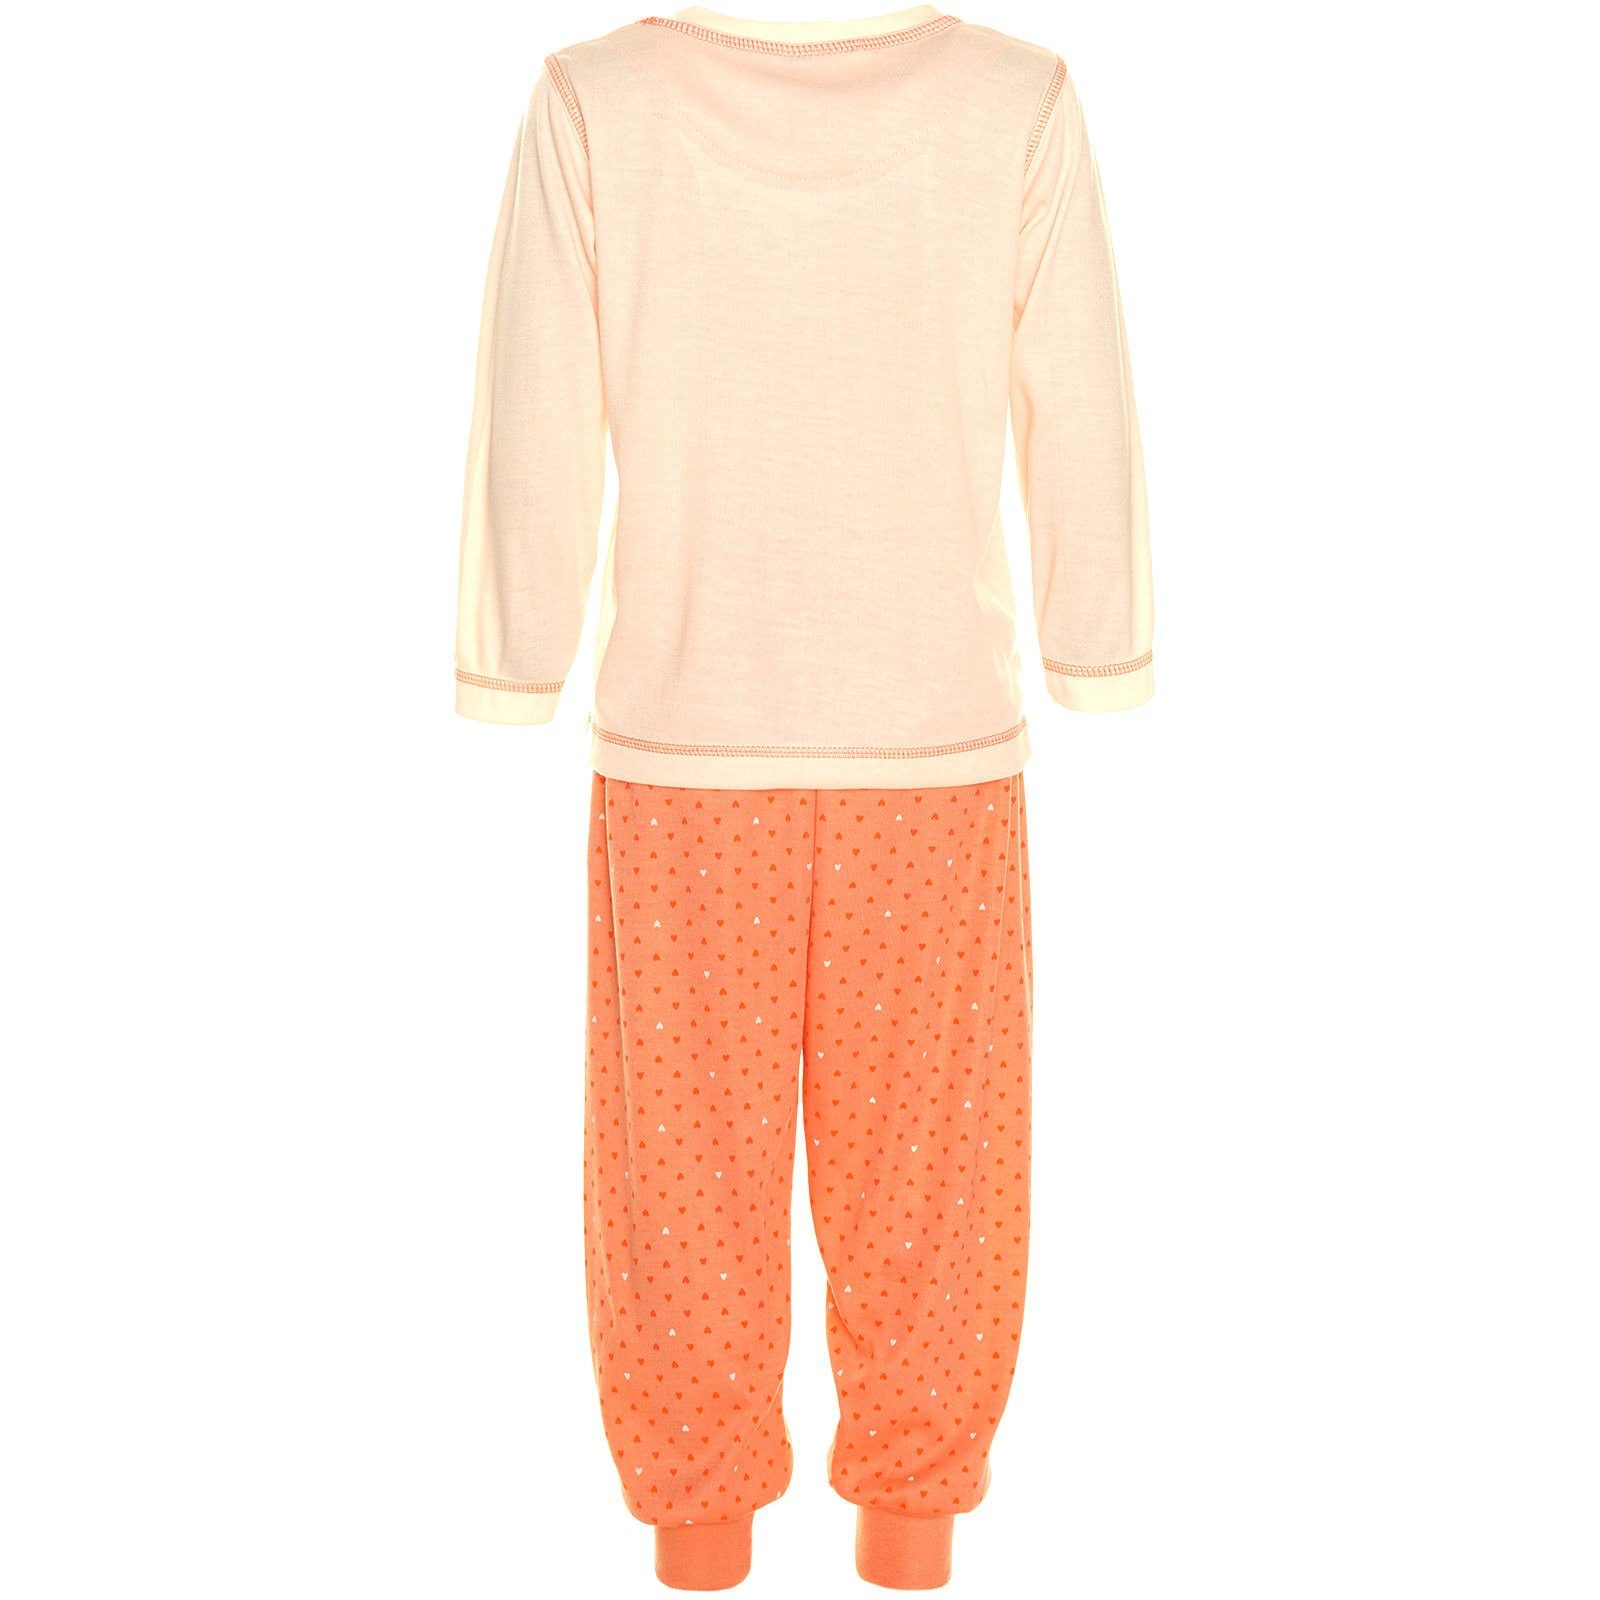 Apricot Schlafanzug, Langer 2tlg. Mädchen Girls Fashion M189 Schlafanzug